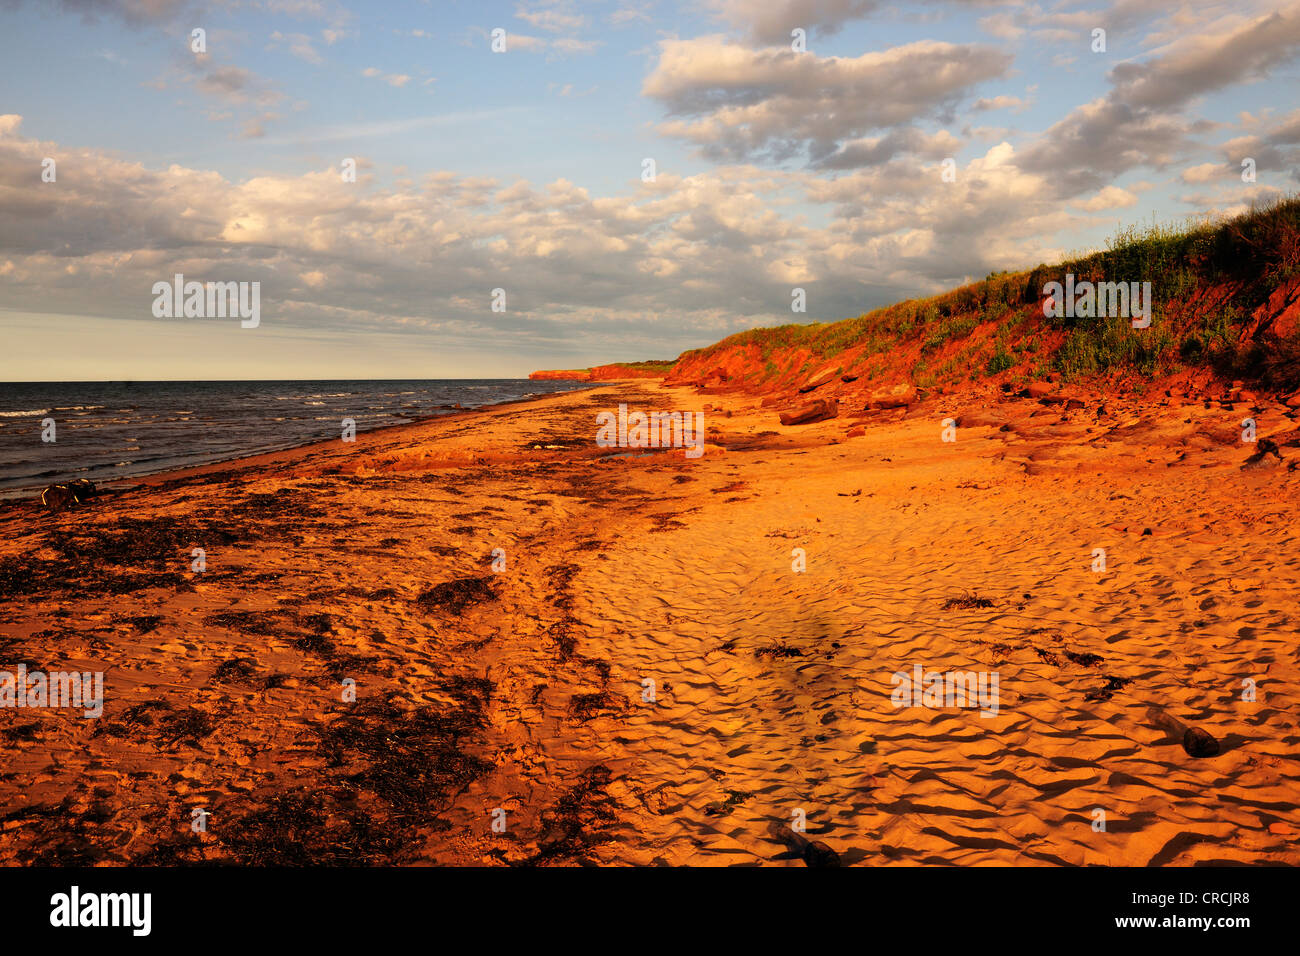 Les falaises en grès rouge et les plages, littoral typique dans Prince Edward Island National Park, Prince Edward Island, Canada Banque D'Images